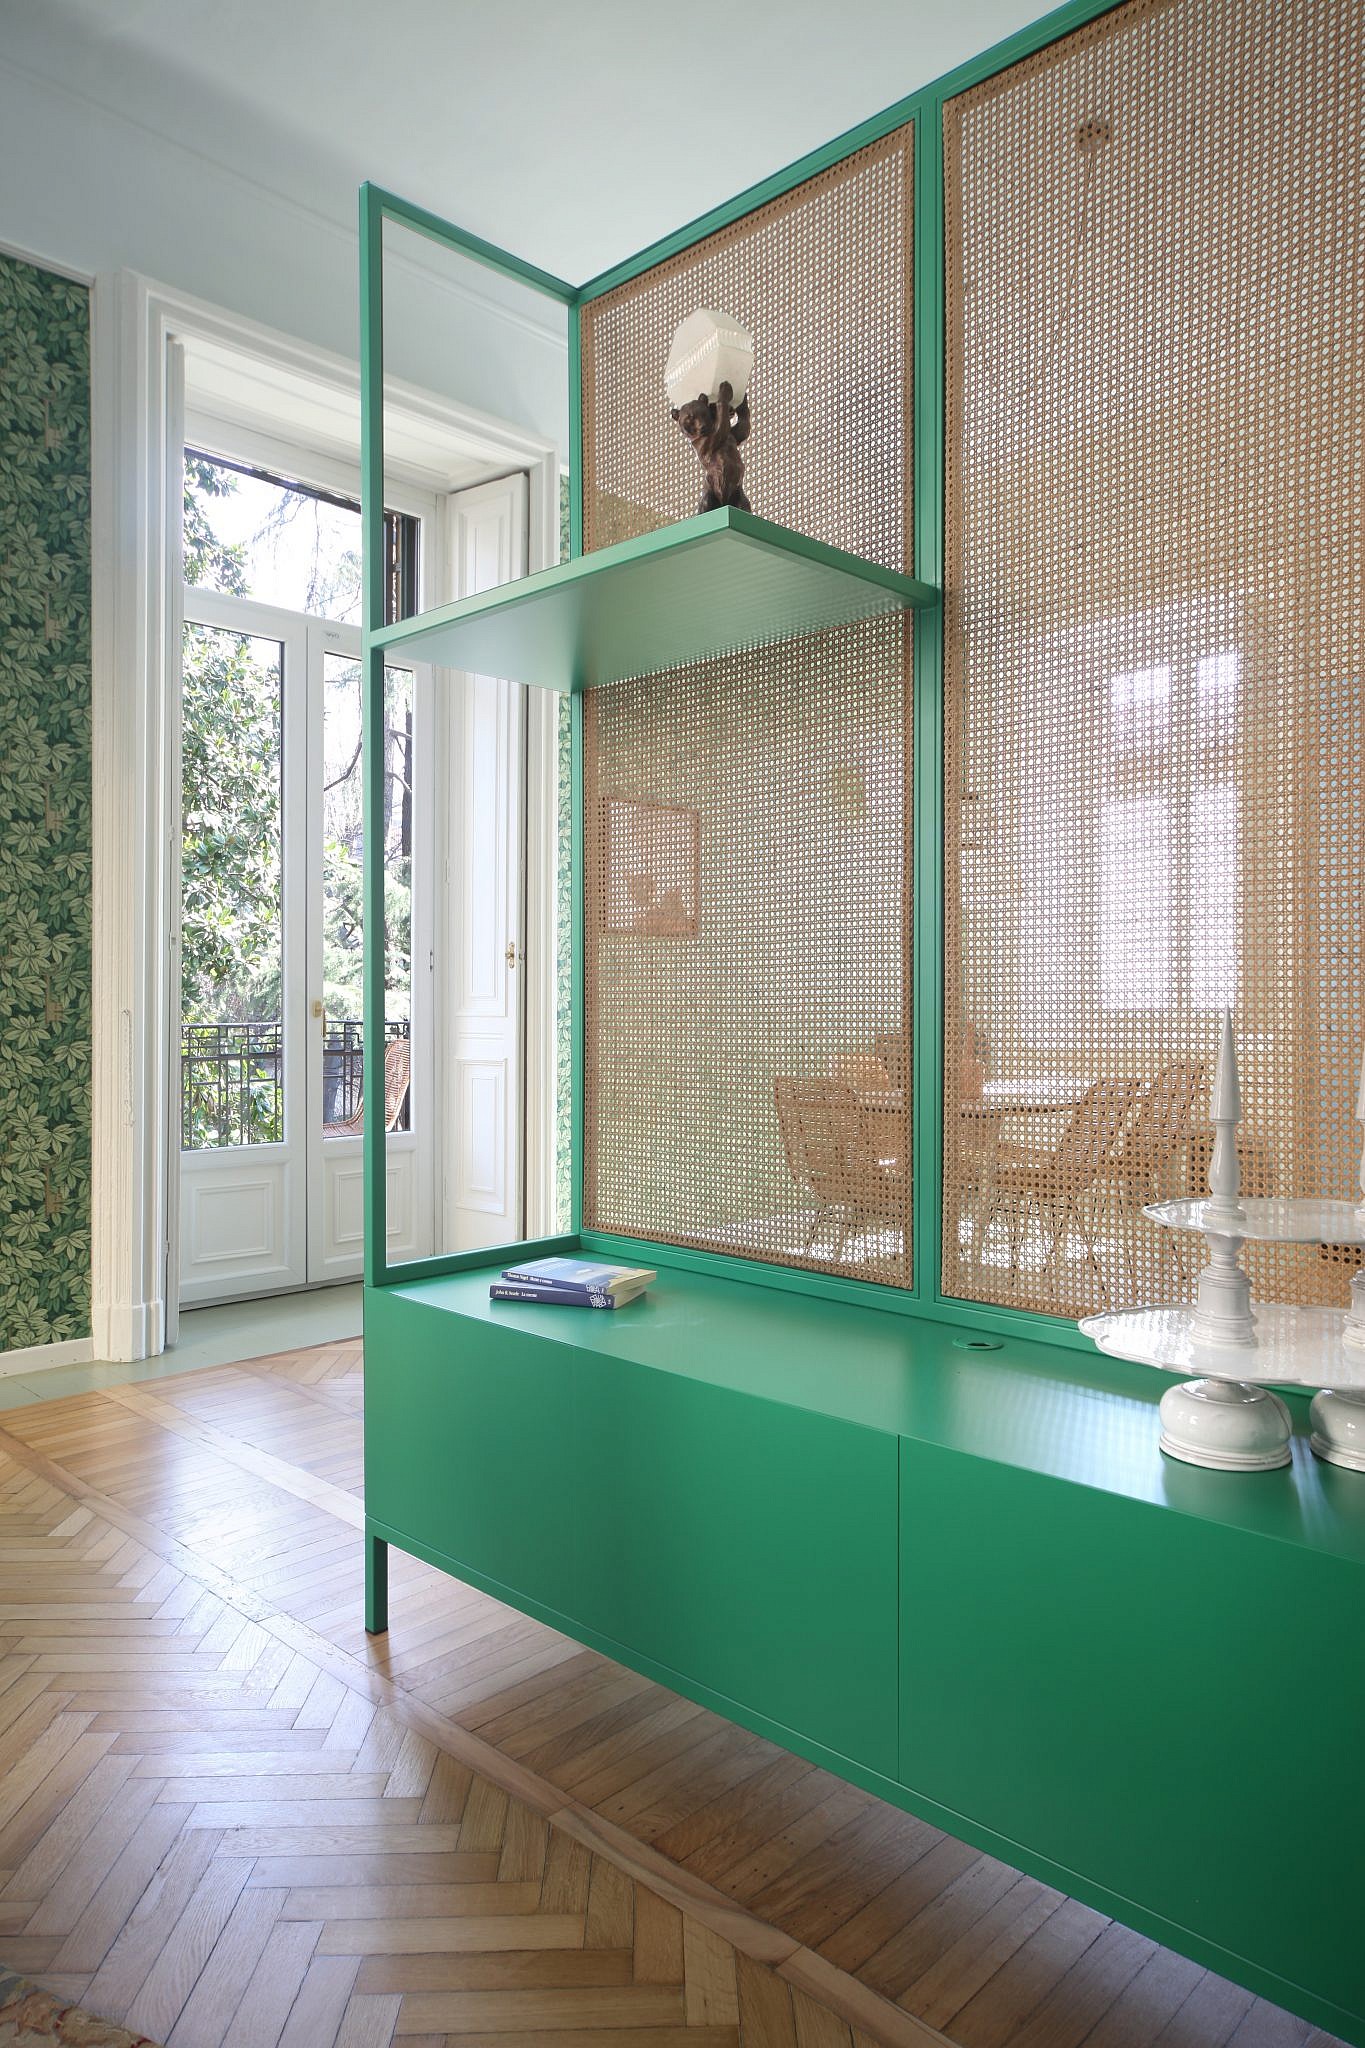 המחיצה בין המטבח לסלון | עיצוב: marcante &#8211; testa, צילום: Carola Ripamonti